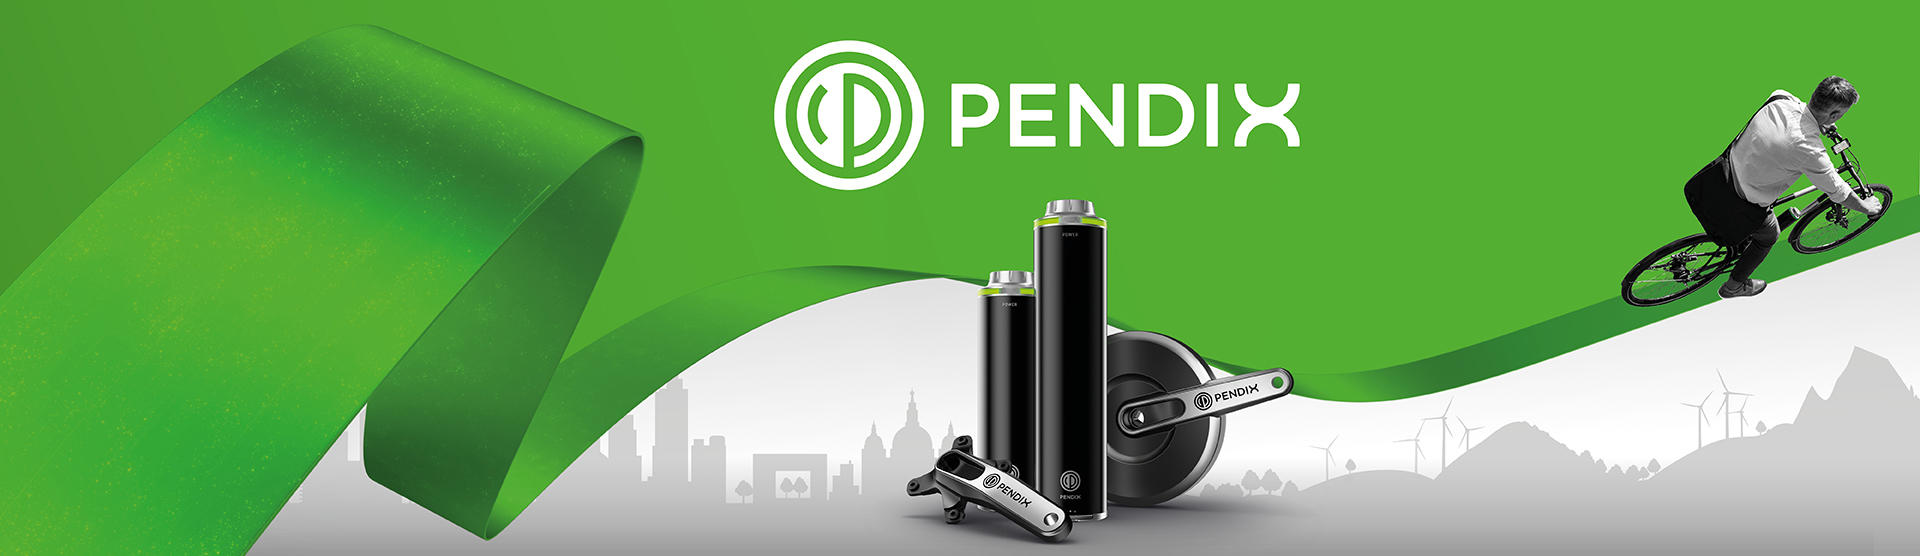 Pendix GmbH